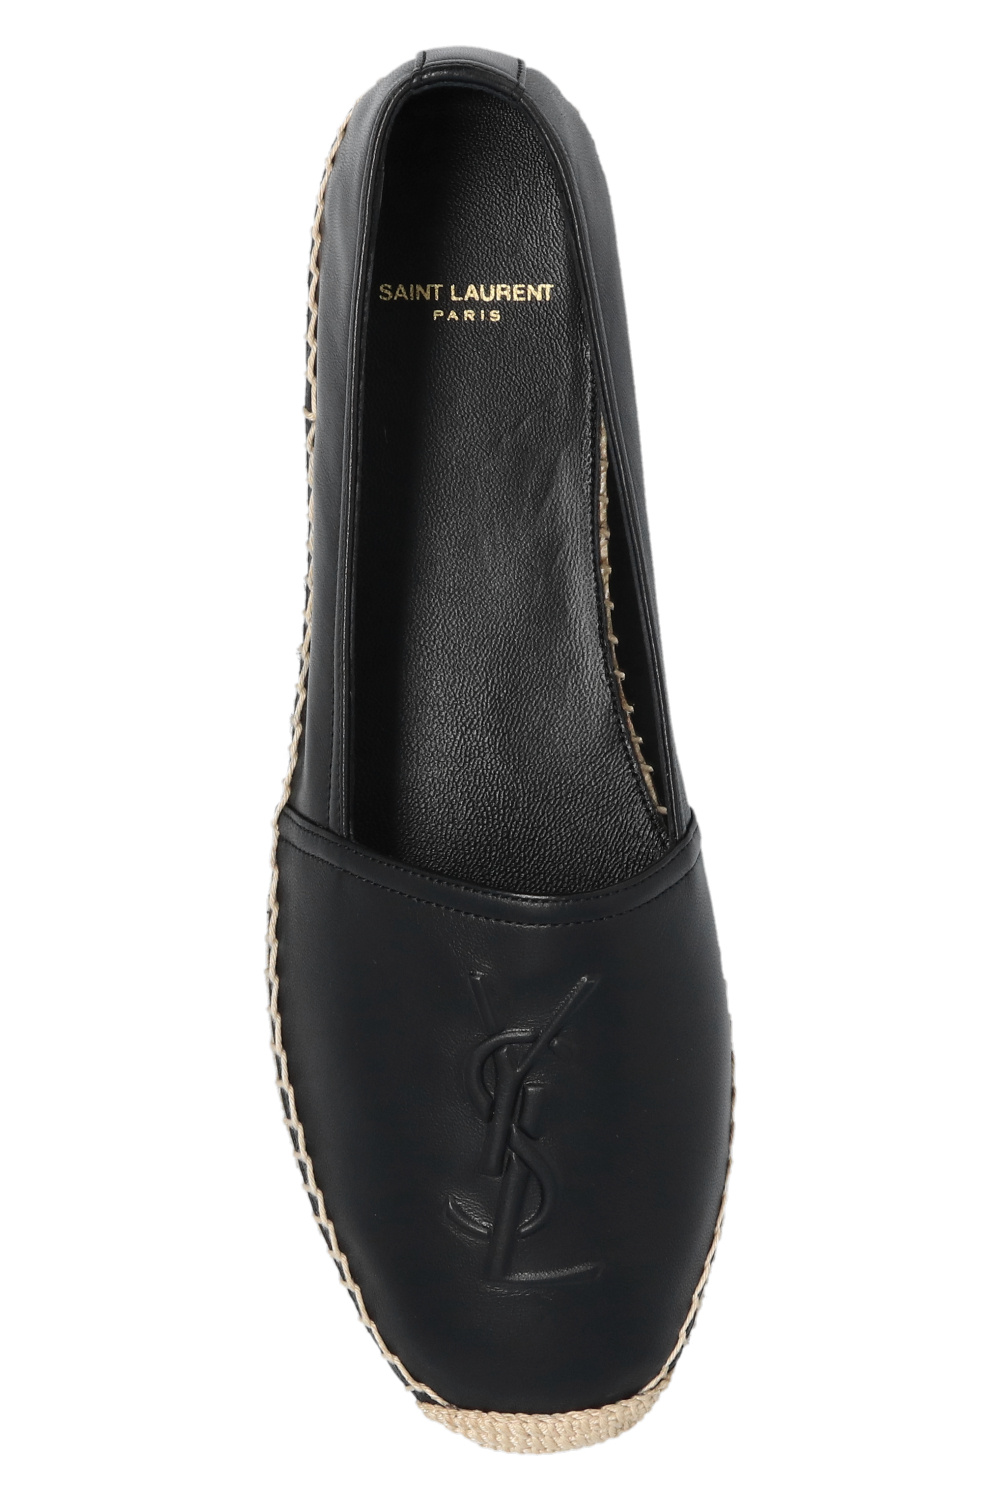 Leather espadrilles Saint Laurent Black size 43.5 EU in Leather - 34277275